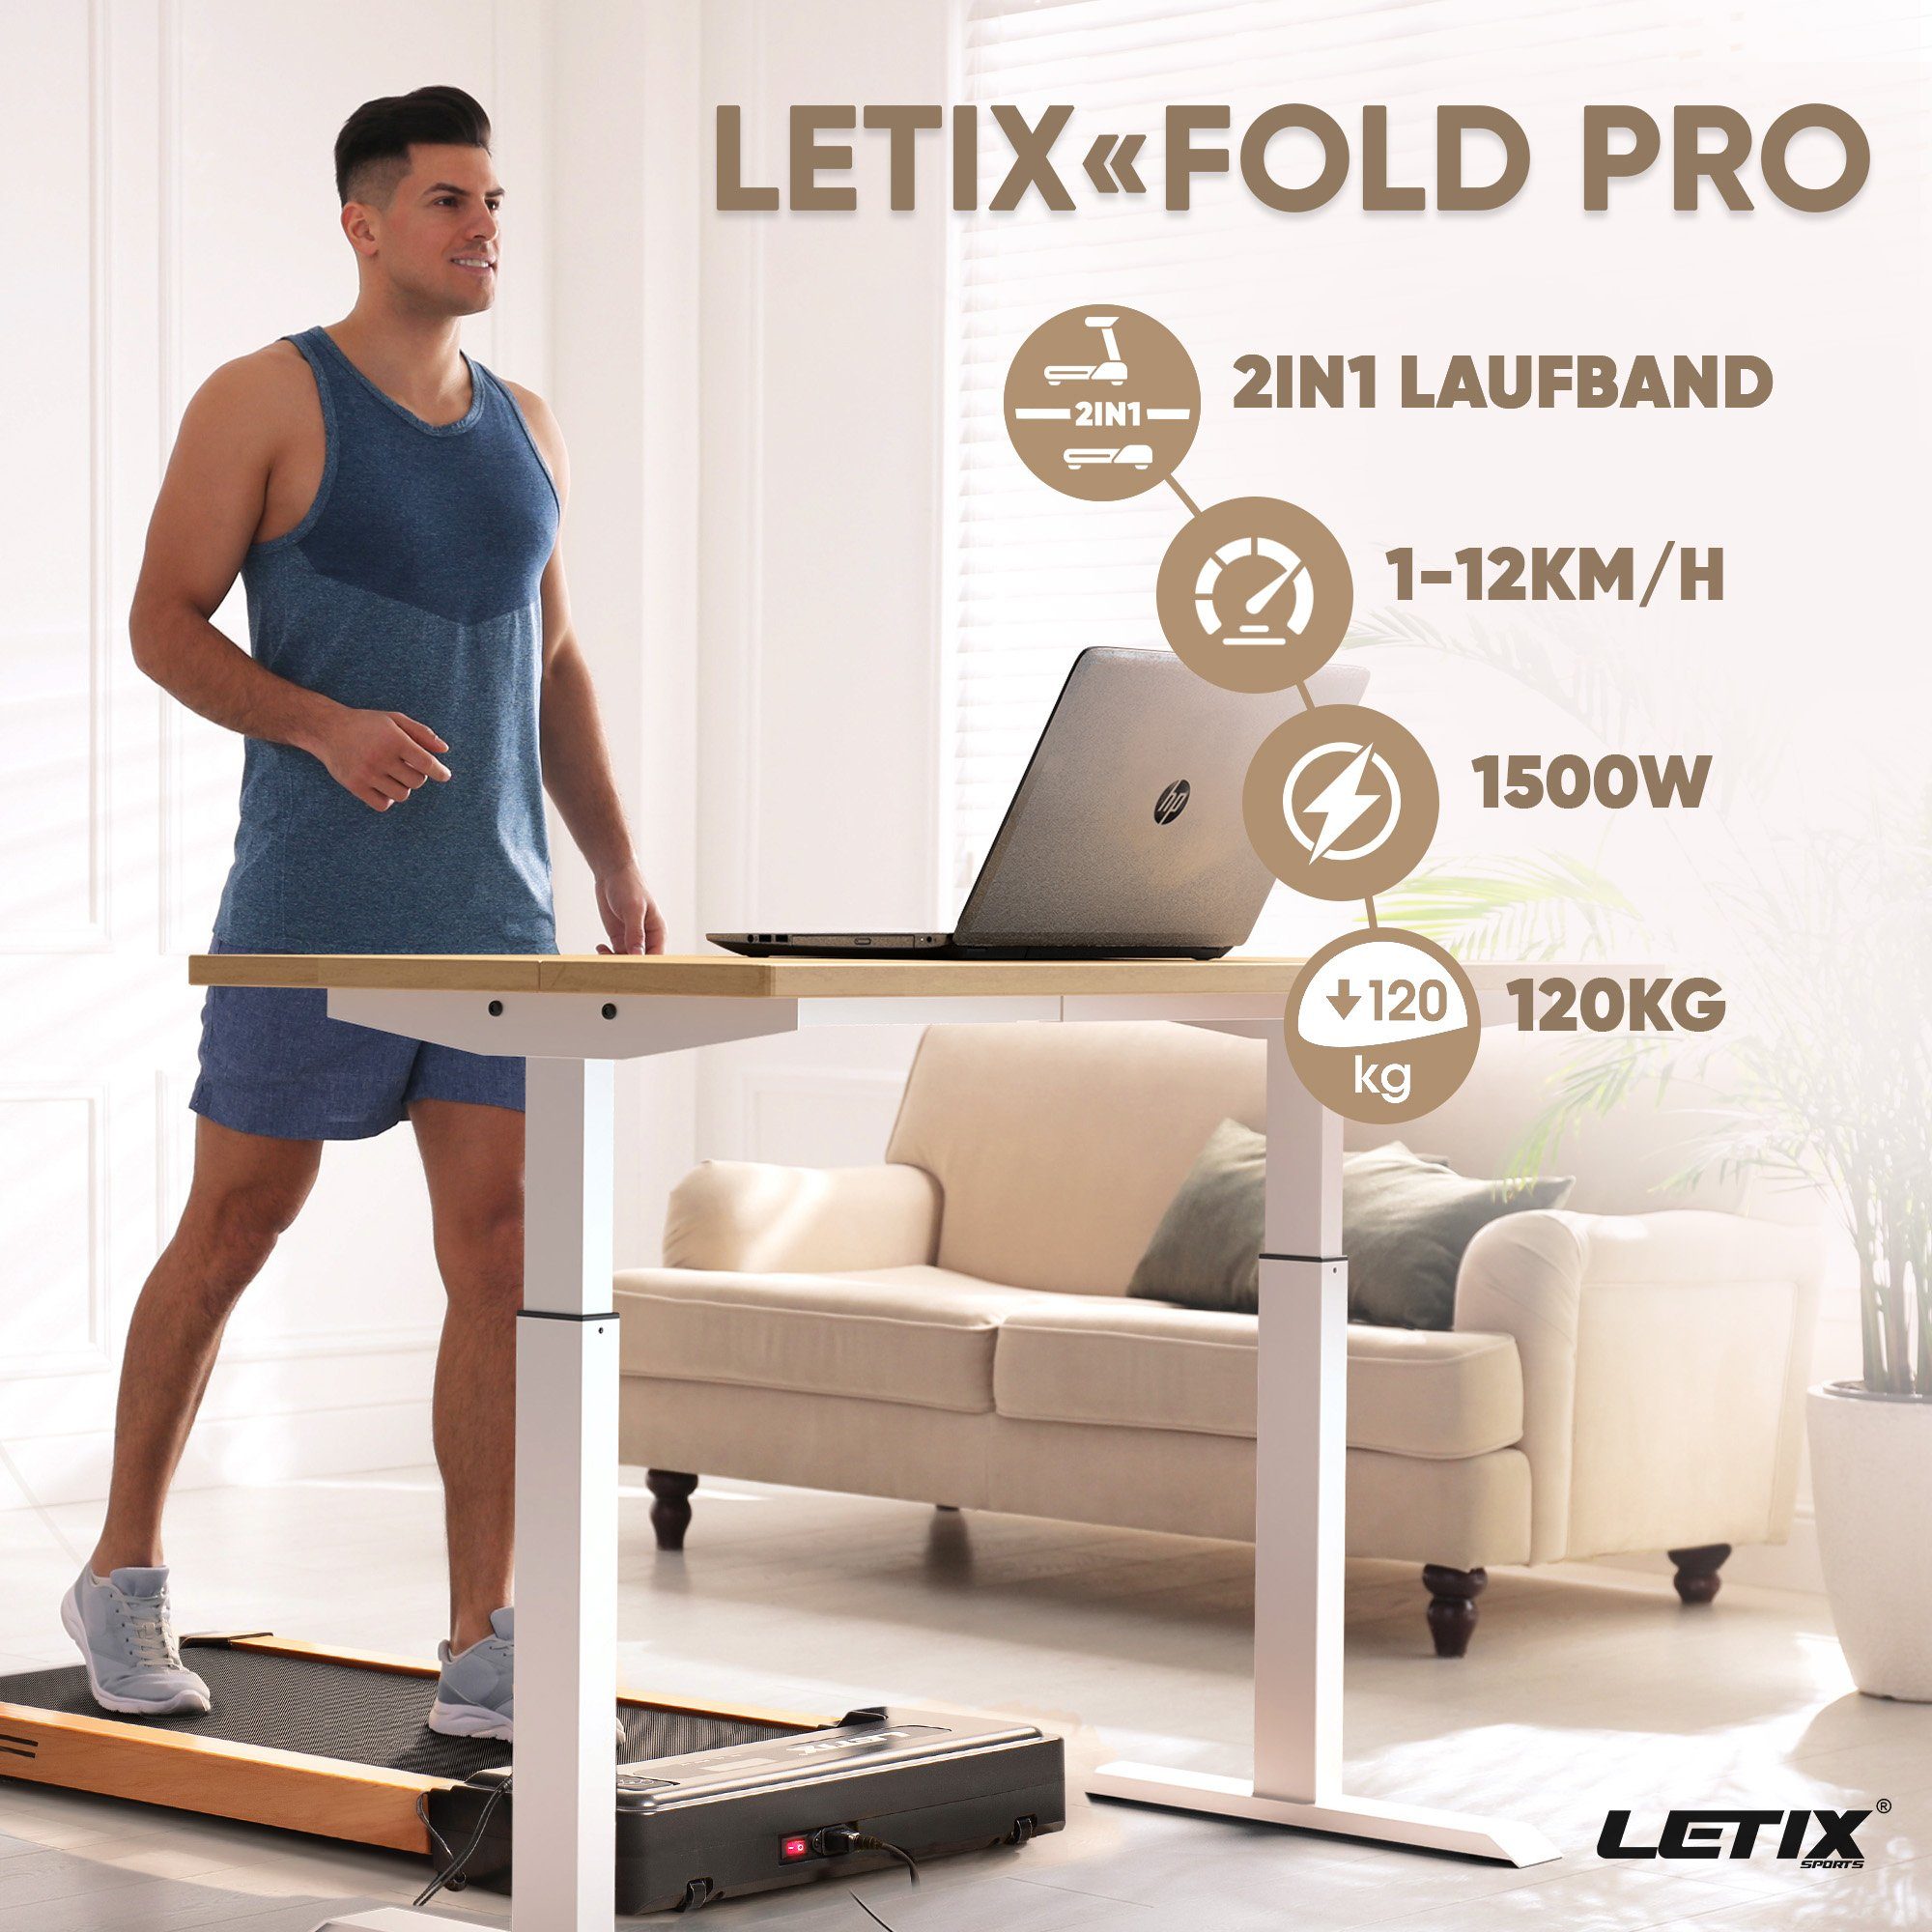 Letix Sports Laufband FoldPro 2in1 für Funktion, zu Büro, LCD-Display, motorisiertes Heimtrainer Hause & und holz-optik mit APP Bluetooth Fitnessgerät